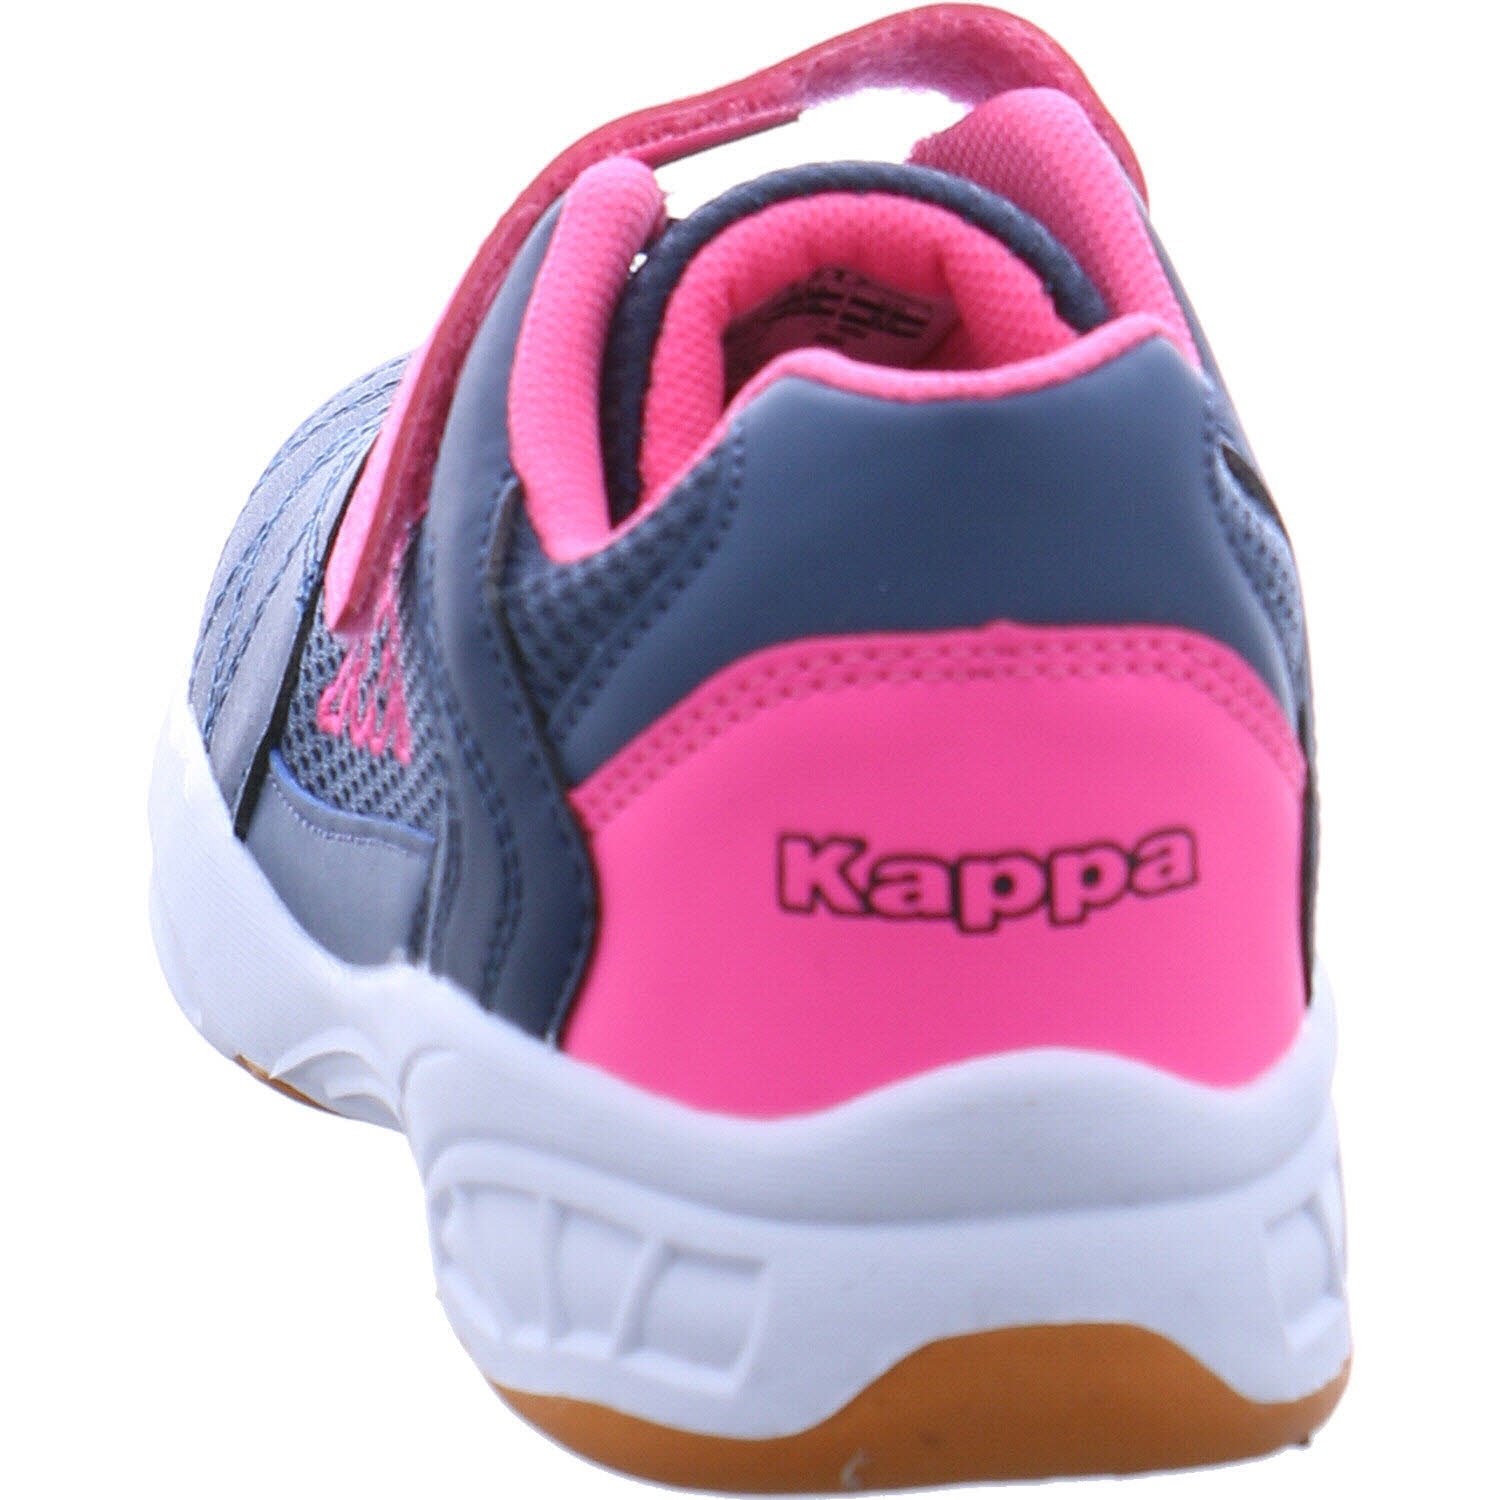 260819 für Stylecode: in II Shoes K | Hallenschuh pink MF Droum MFK Kappa Mädchen blau/ P&P